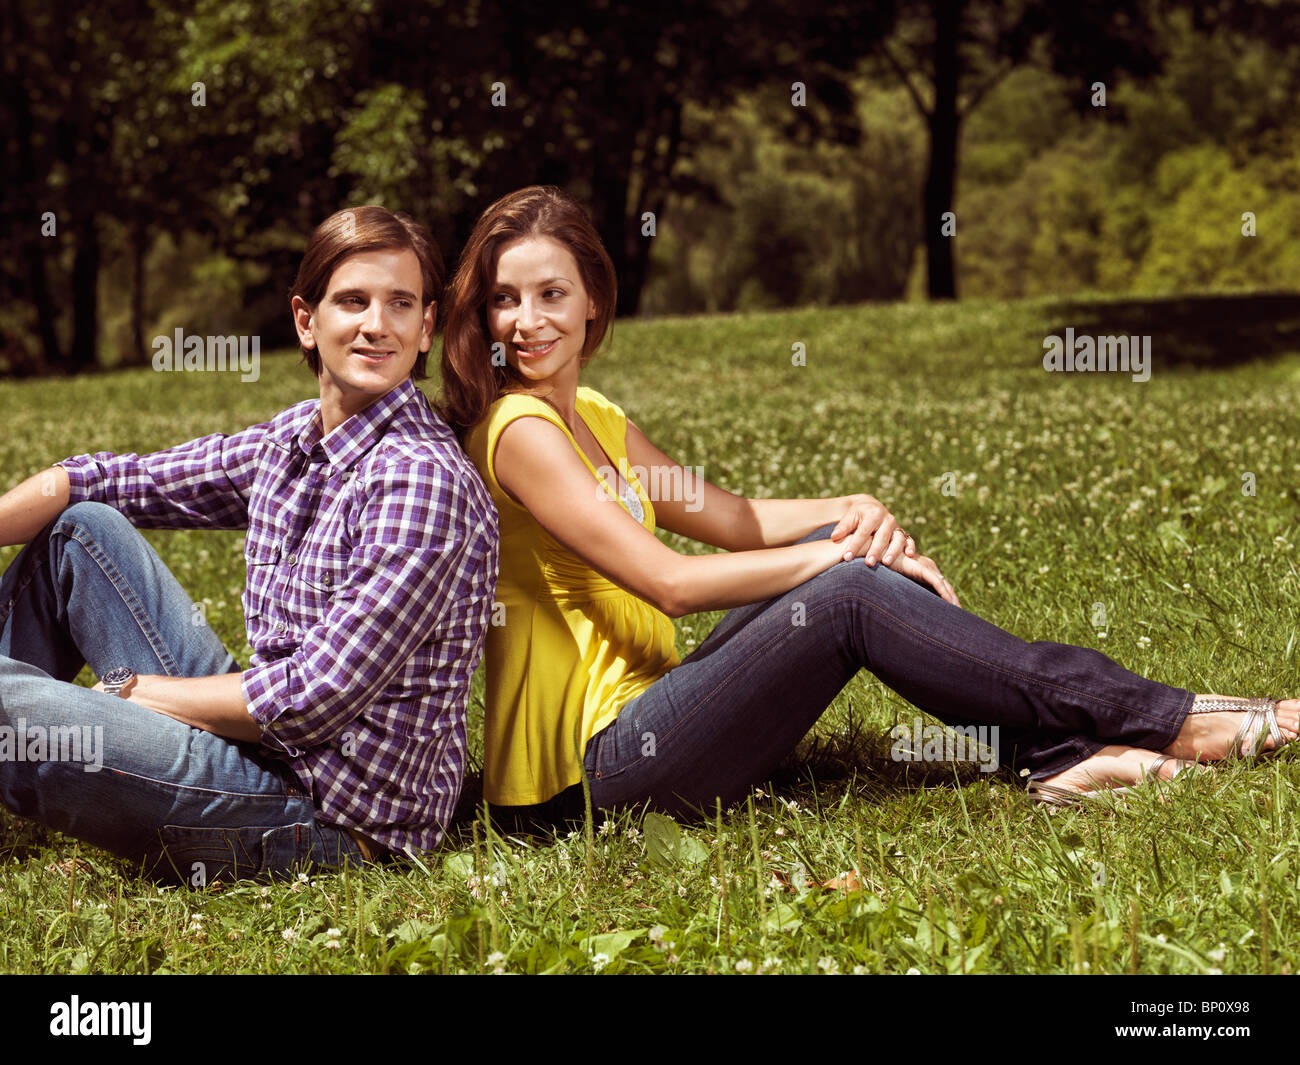 Licenza disponibile all'indirizzo MaximImages.com - giovane felice coppia sorridente ai primi trent'anni seduto sull'erba in un parco Foto Stock